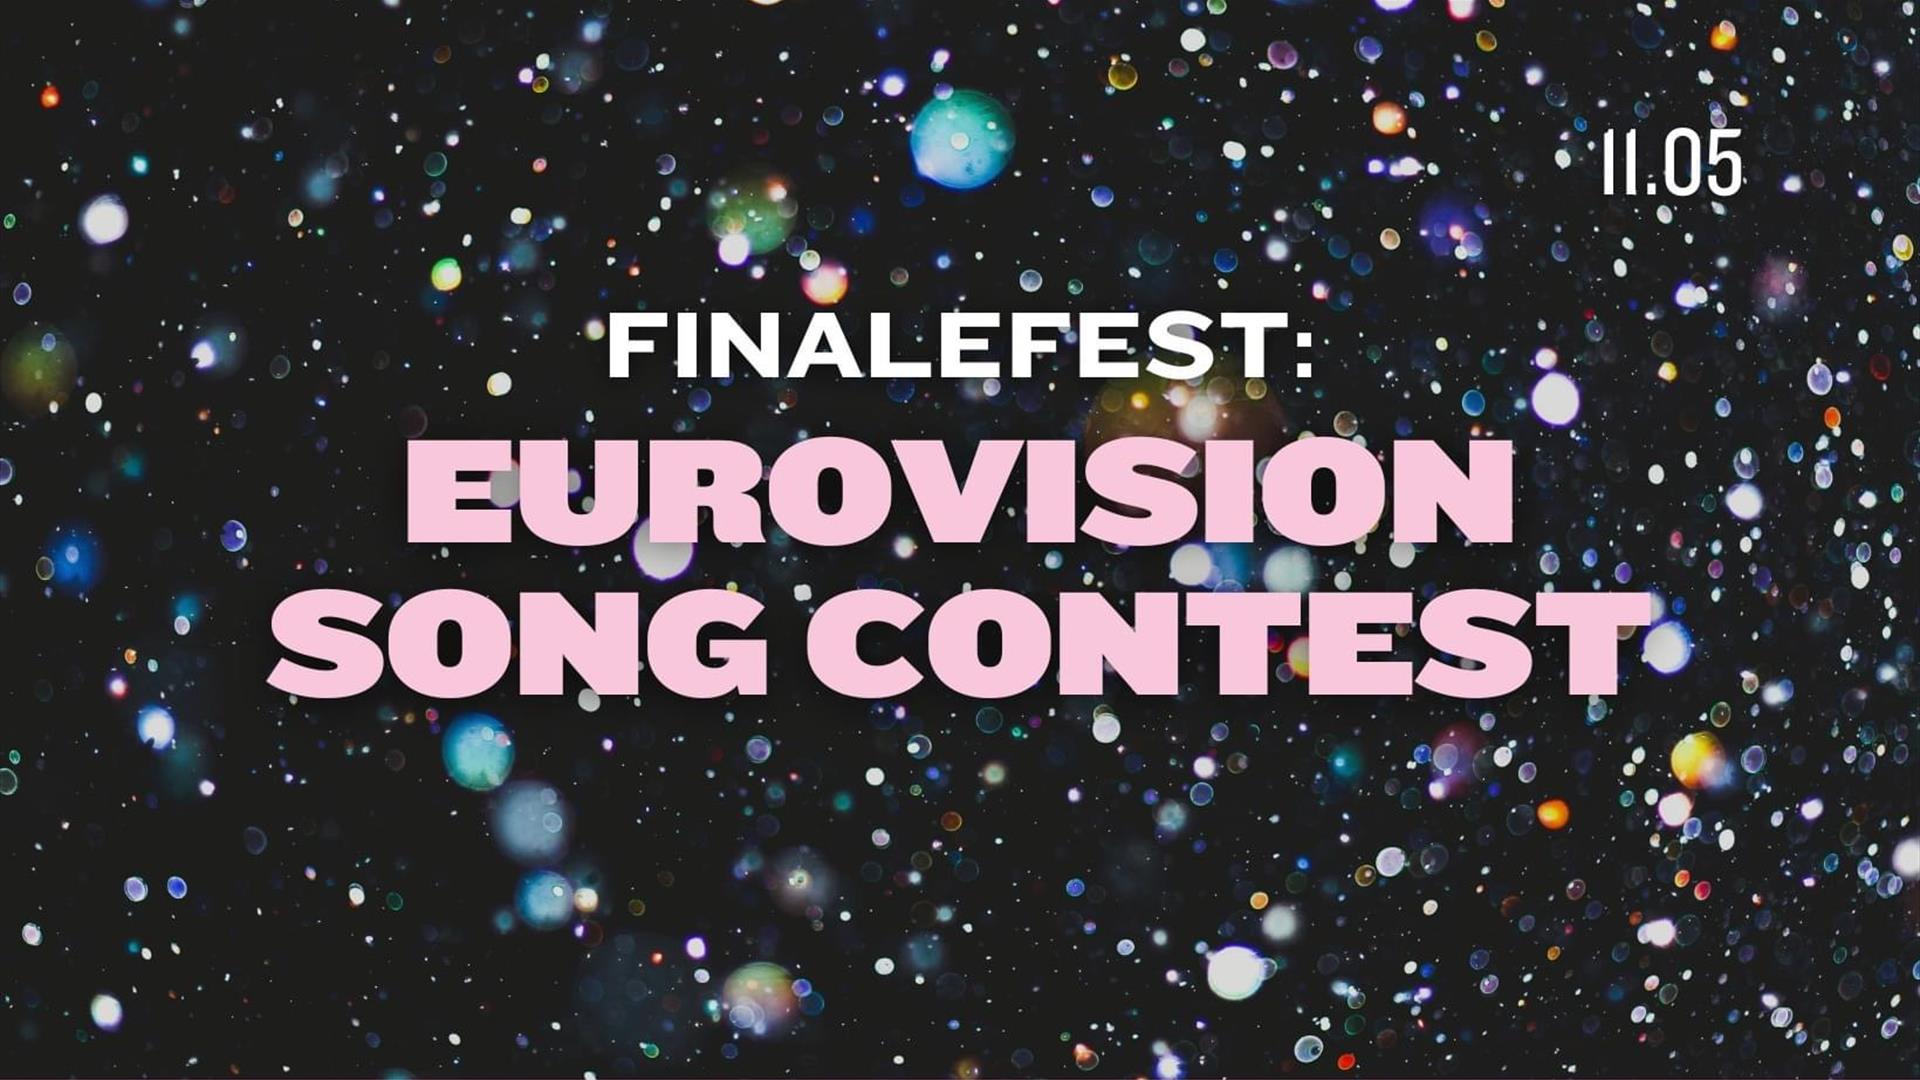 Eurovisionfest